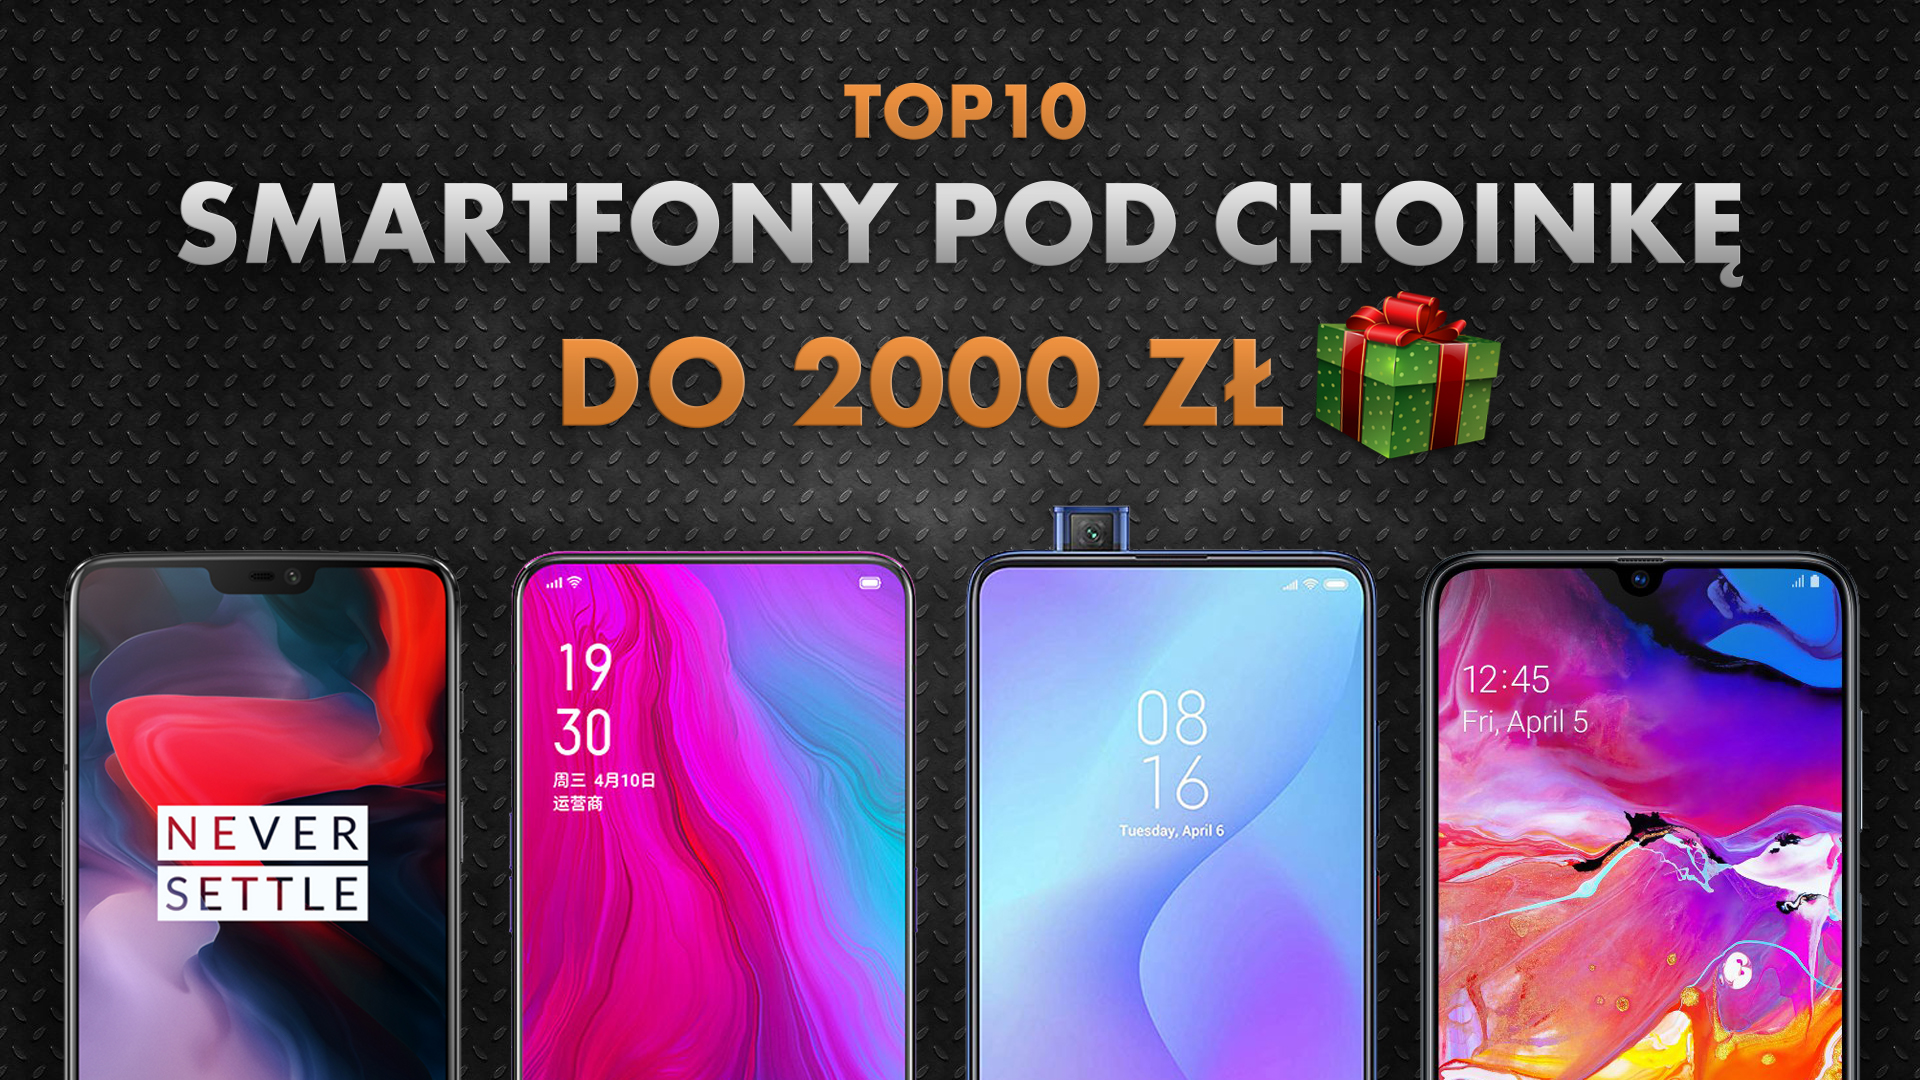 Najlepsze smartfony pod choinkę do 2000 zł | NASZE TOP 10